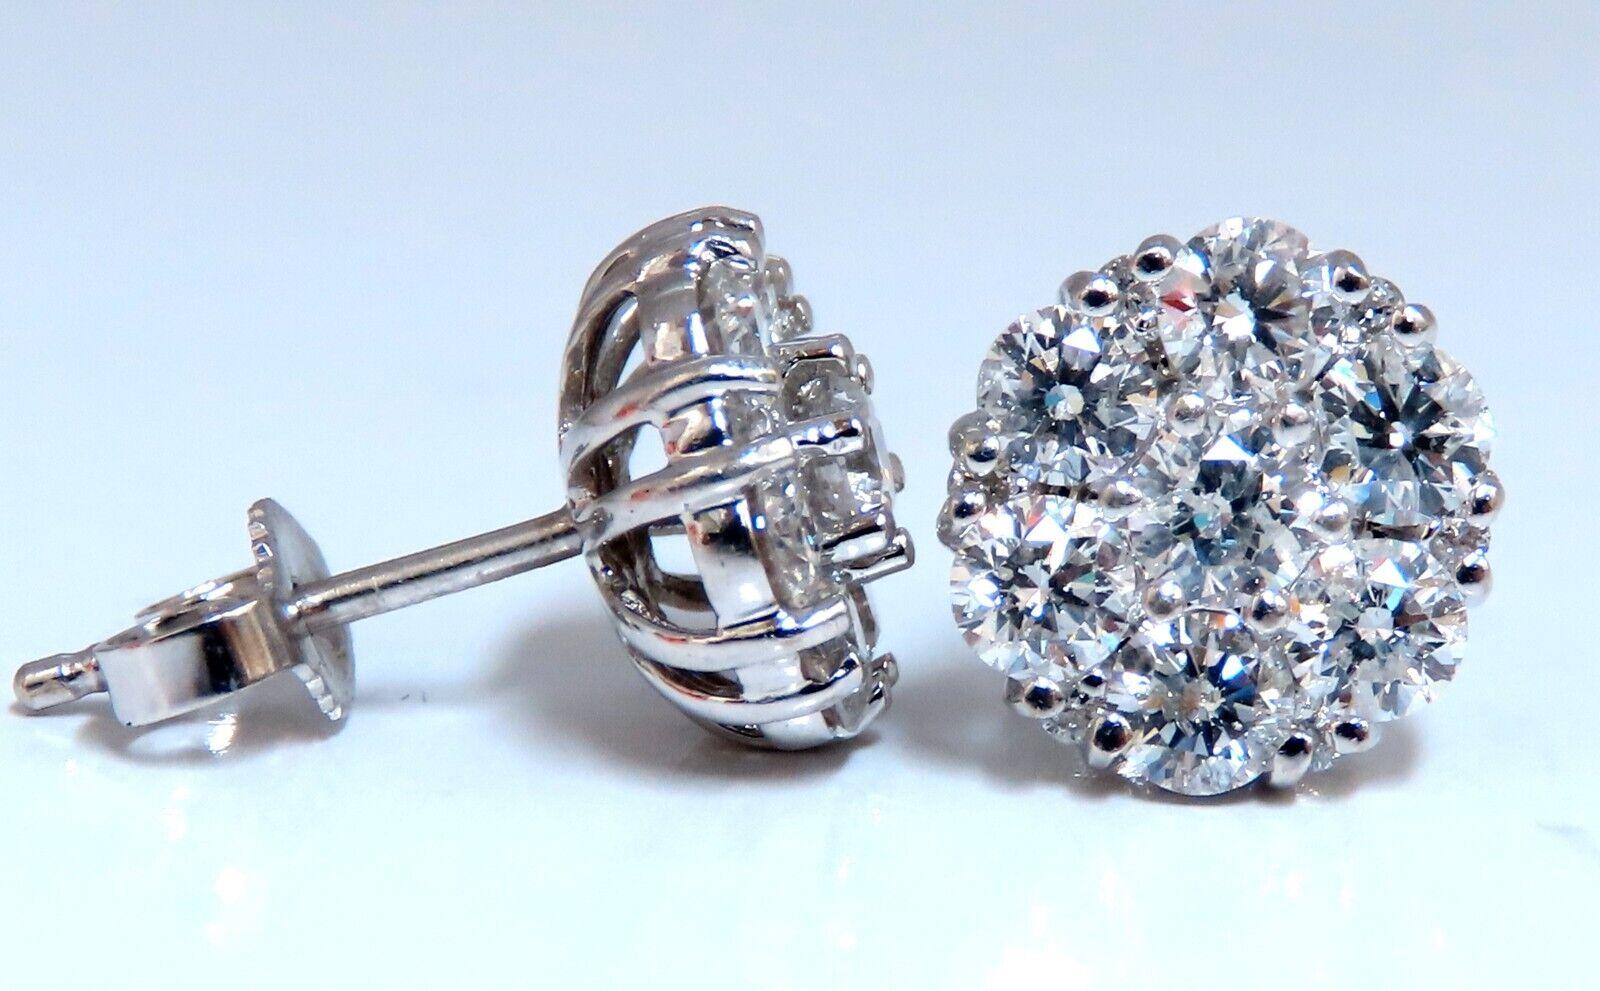 Cluster-Diamant-Ohrringe.

1.50 Karat natürliche runde Diamanten

G - Farbe vs2  Übersichtlichkeit

14 Karat Weißgold 3,2 Gramm

Ohrringe messen 9,8 mm breit

$11,000 Schätzung Zertifikat zu begleiten